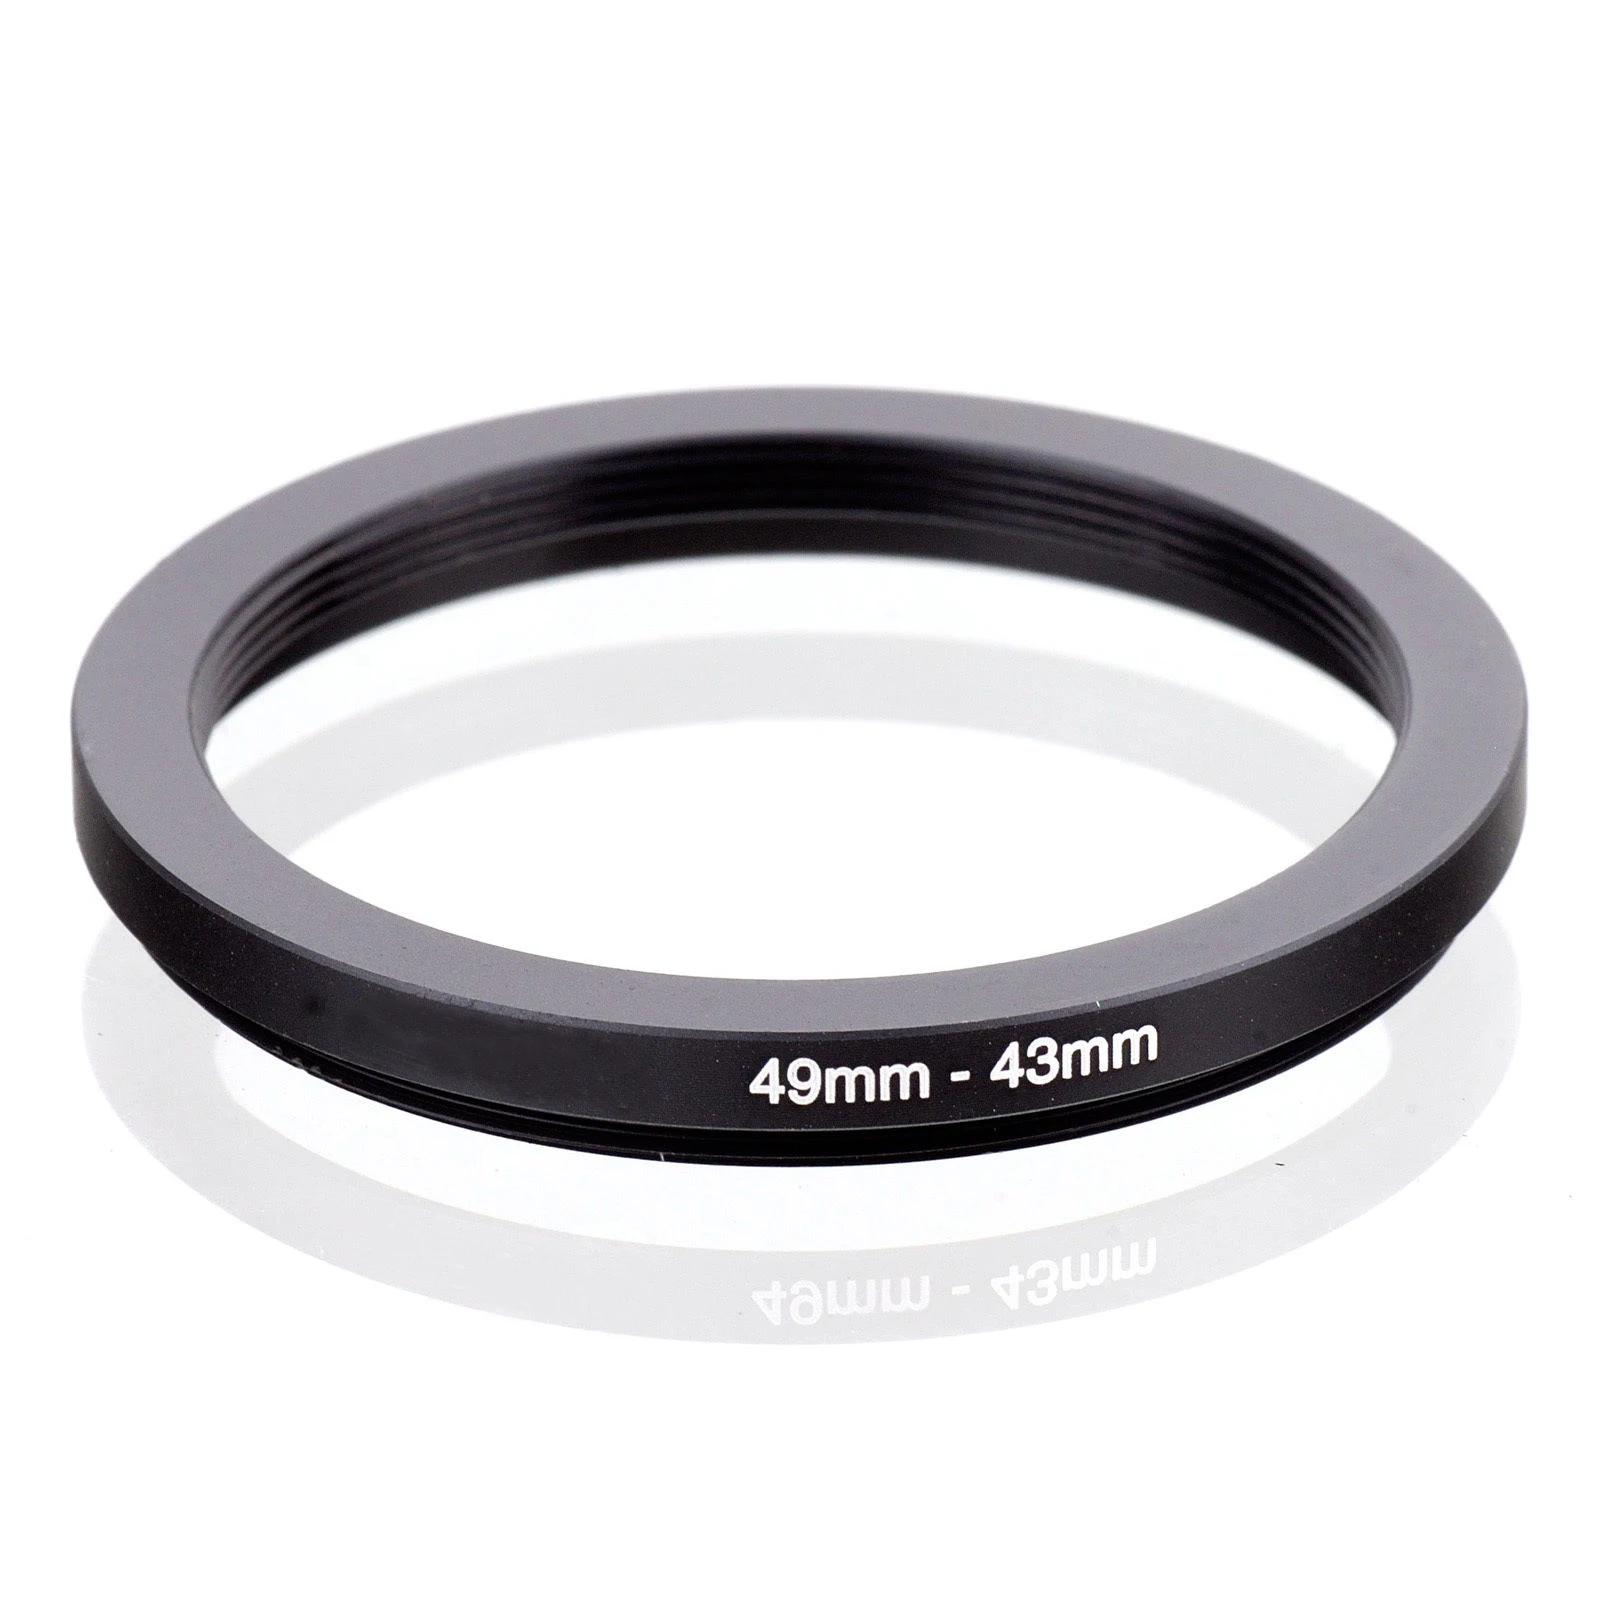 Noir Reflex numérique vhbw Adaptateur Bague Step-up diamètre de 43mm vers 49mm pour Objectif Appareil Photo 